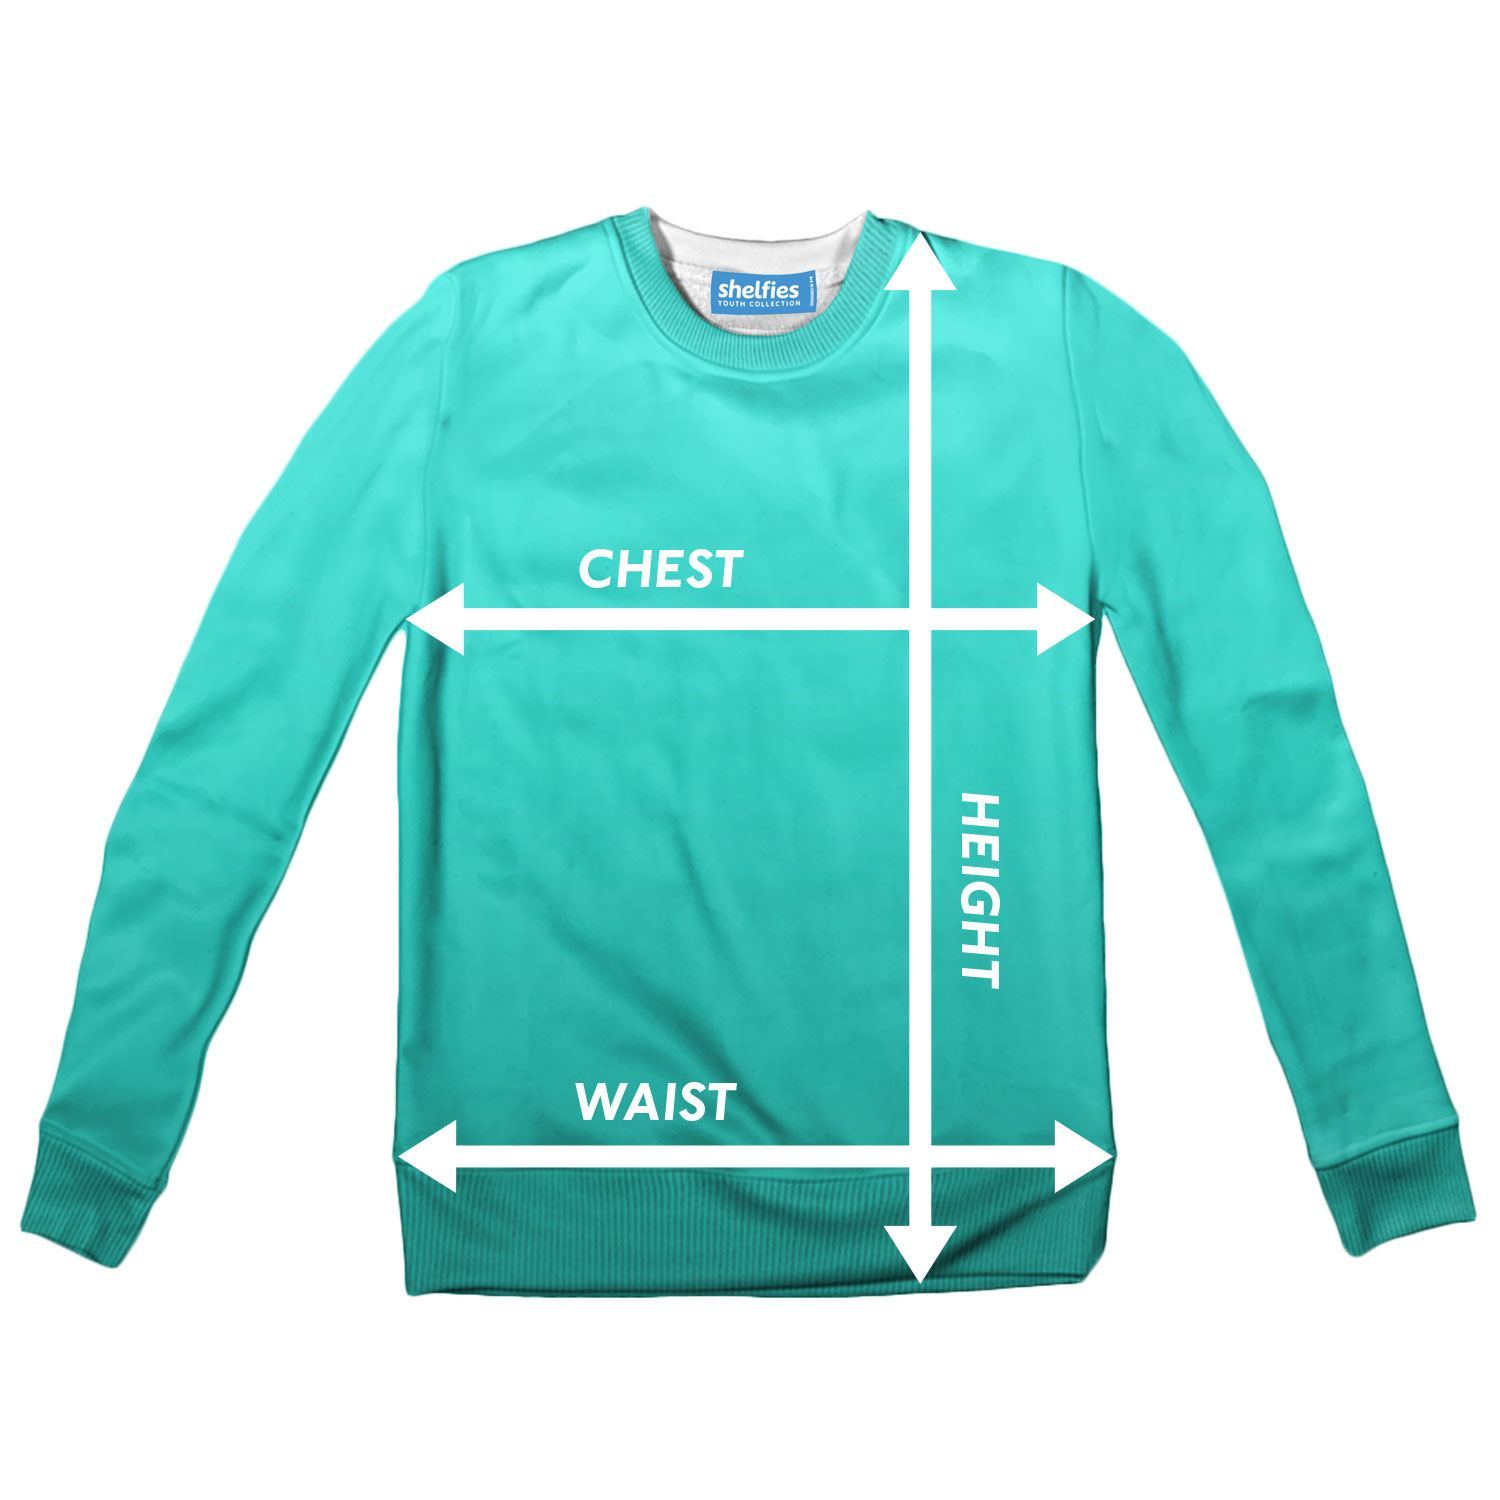 How to 42 shirt size / XXL & XXXL Sizes in S xl xxl shirt size